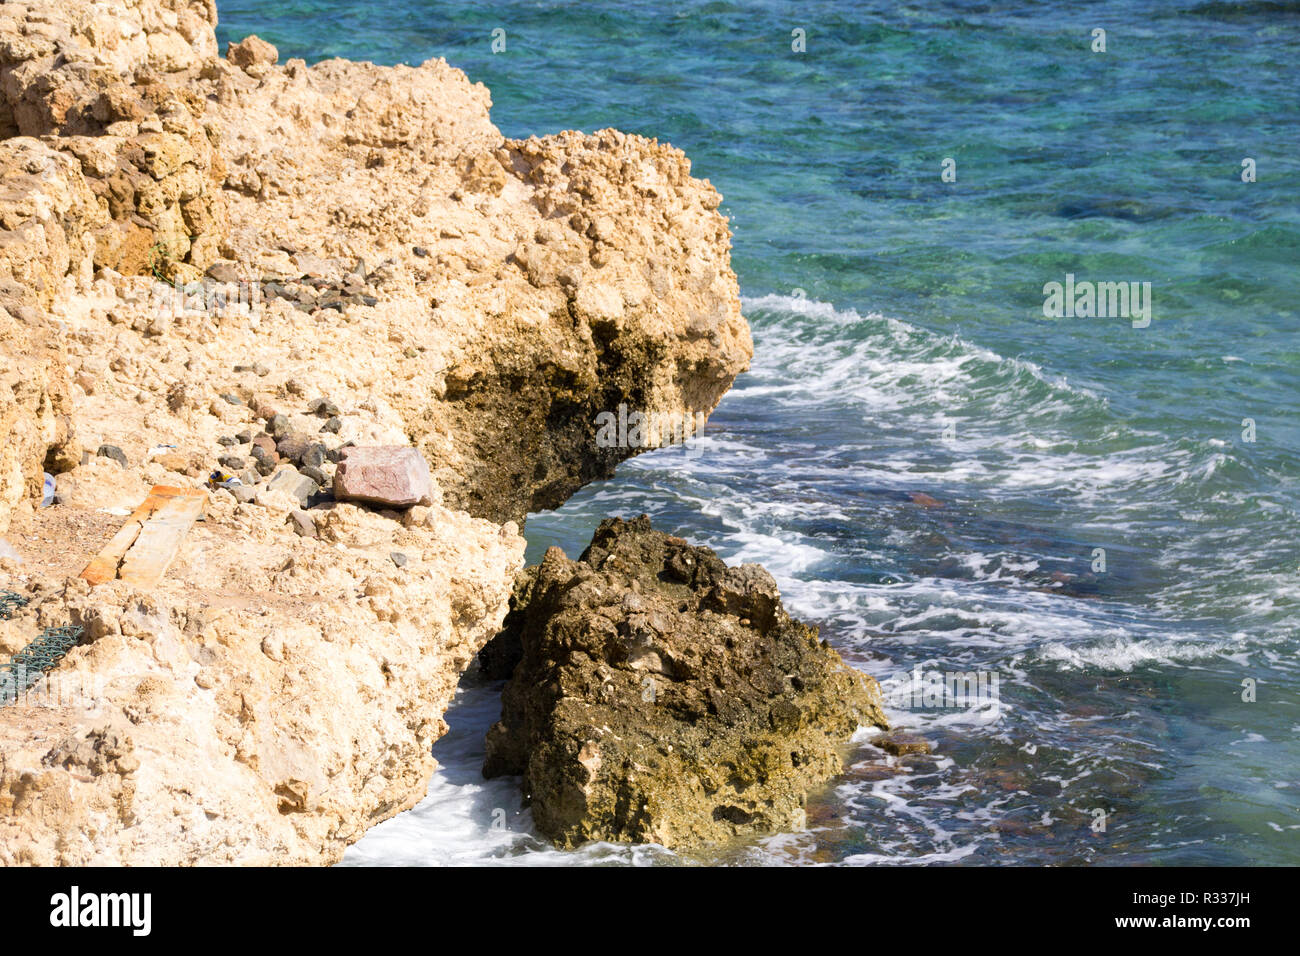 El-Shaikh Sharm, Ägypten - November 2, 2018: - Foto für die Küste des Roten Meeres in der ägyptischen Stadt Scharm el-Scheich, die Wasser zeigen und einige Felsen. Stockfoto